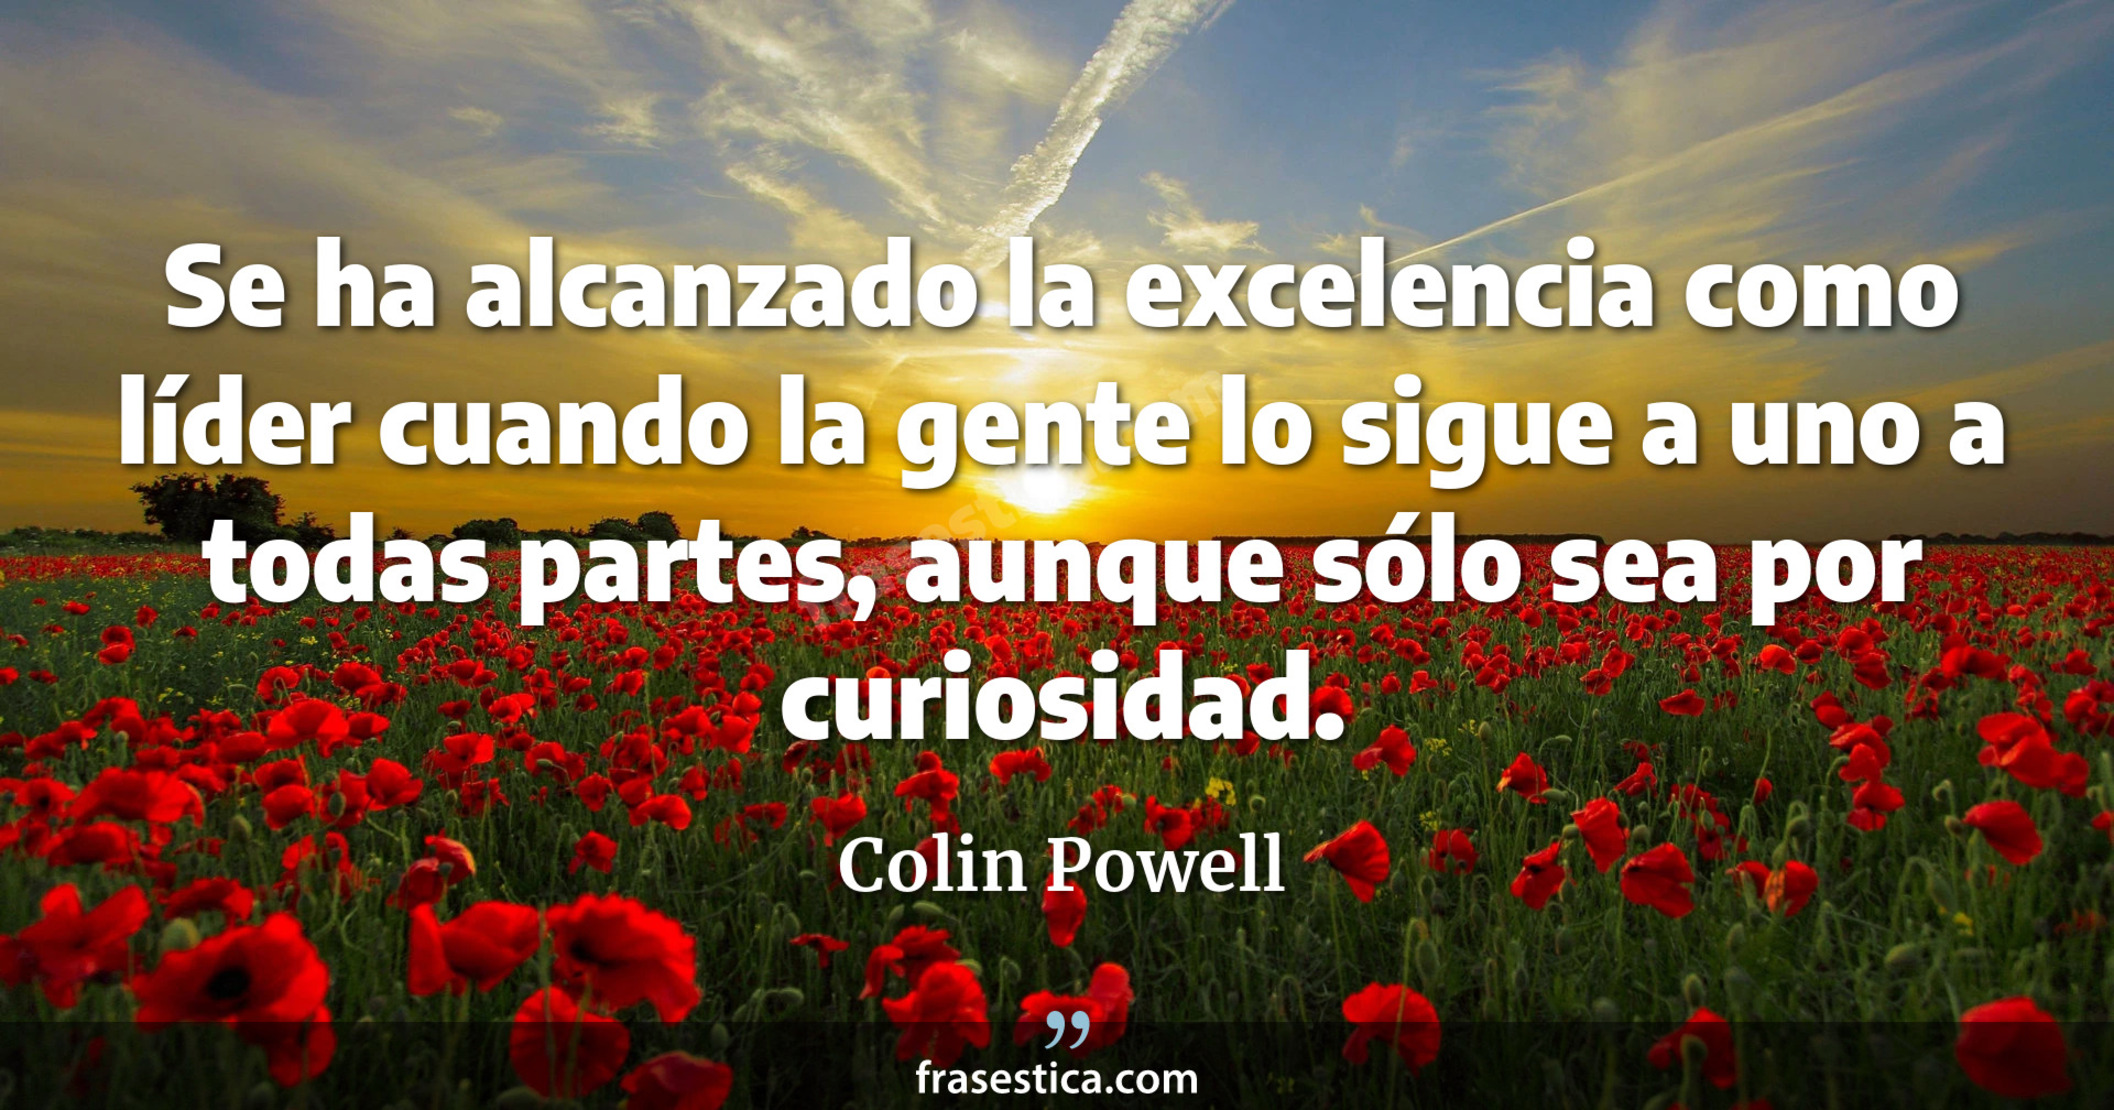 Se ha alcanzado la excelencia como líder cuando la gente lo sigue a uno a todas partes, aunque sólo sea por curiosidad. - Colin Powell